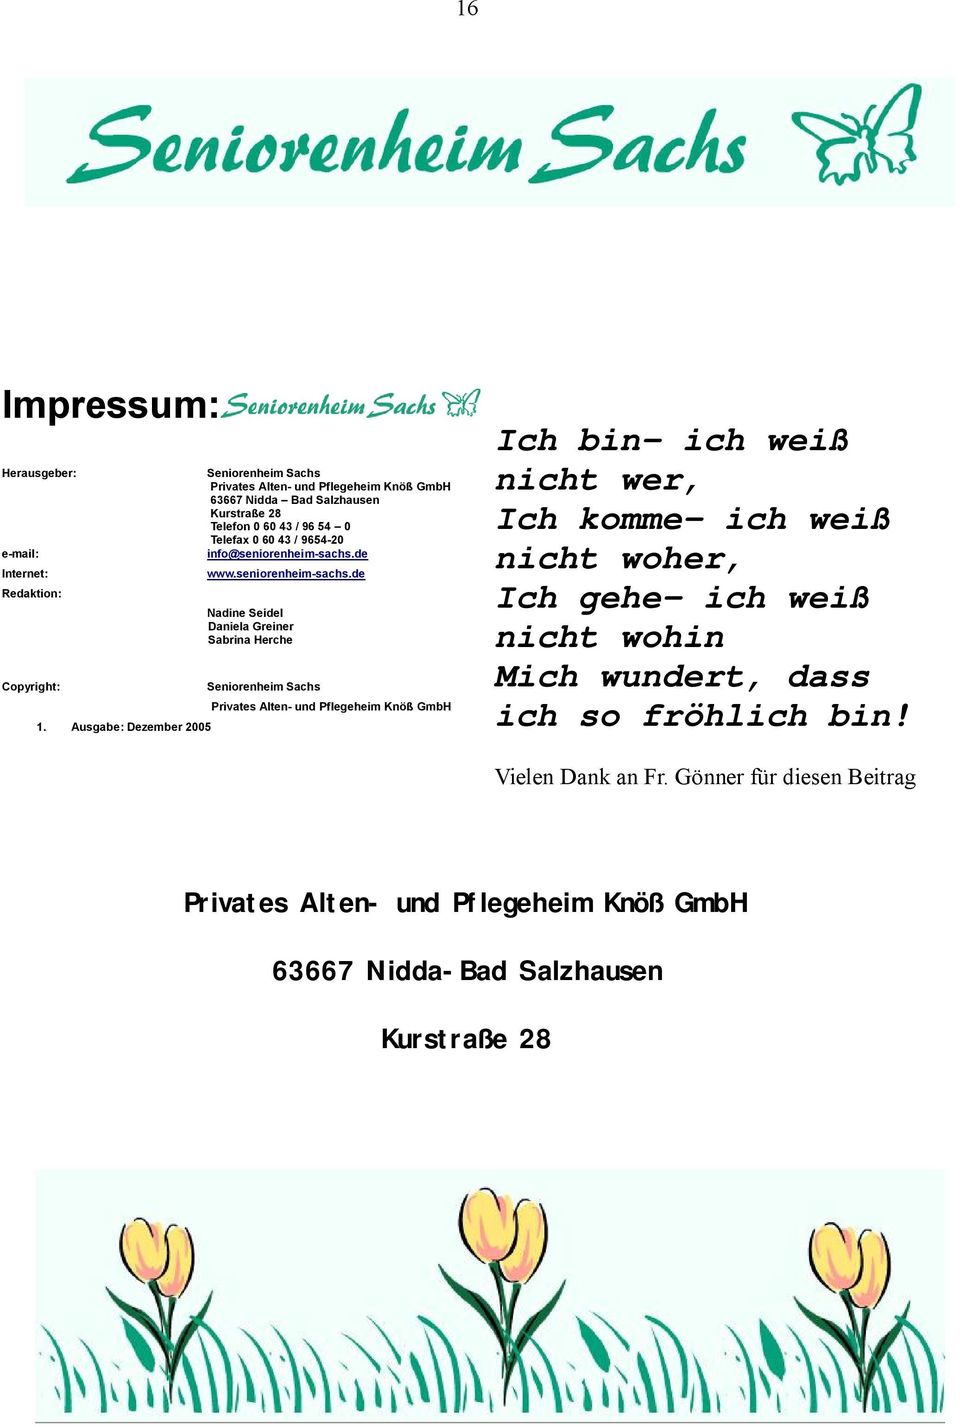 / 9654-20 info@seniorenheim-sachs.